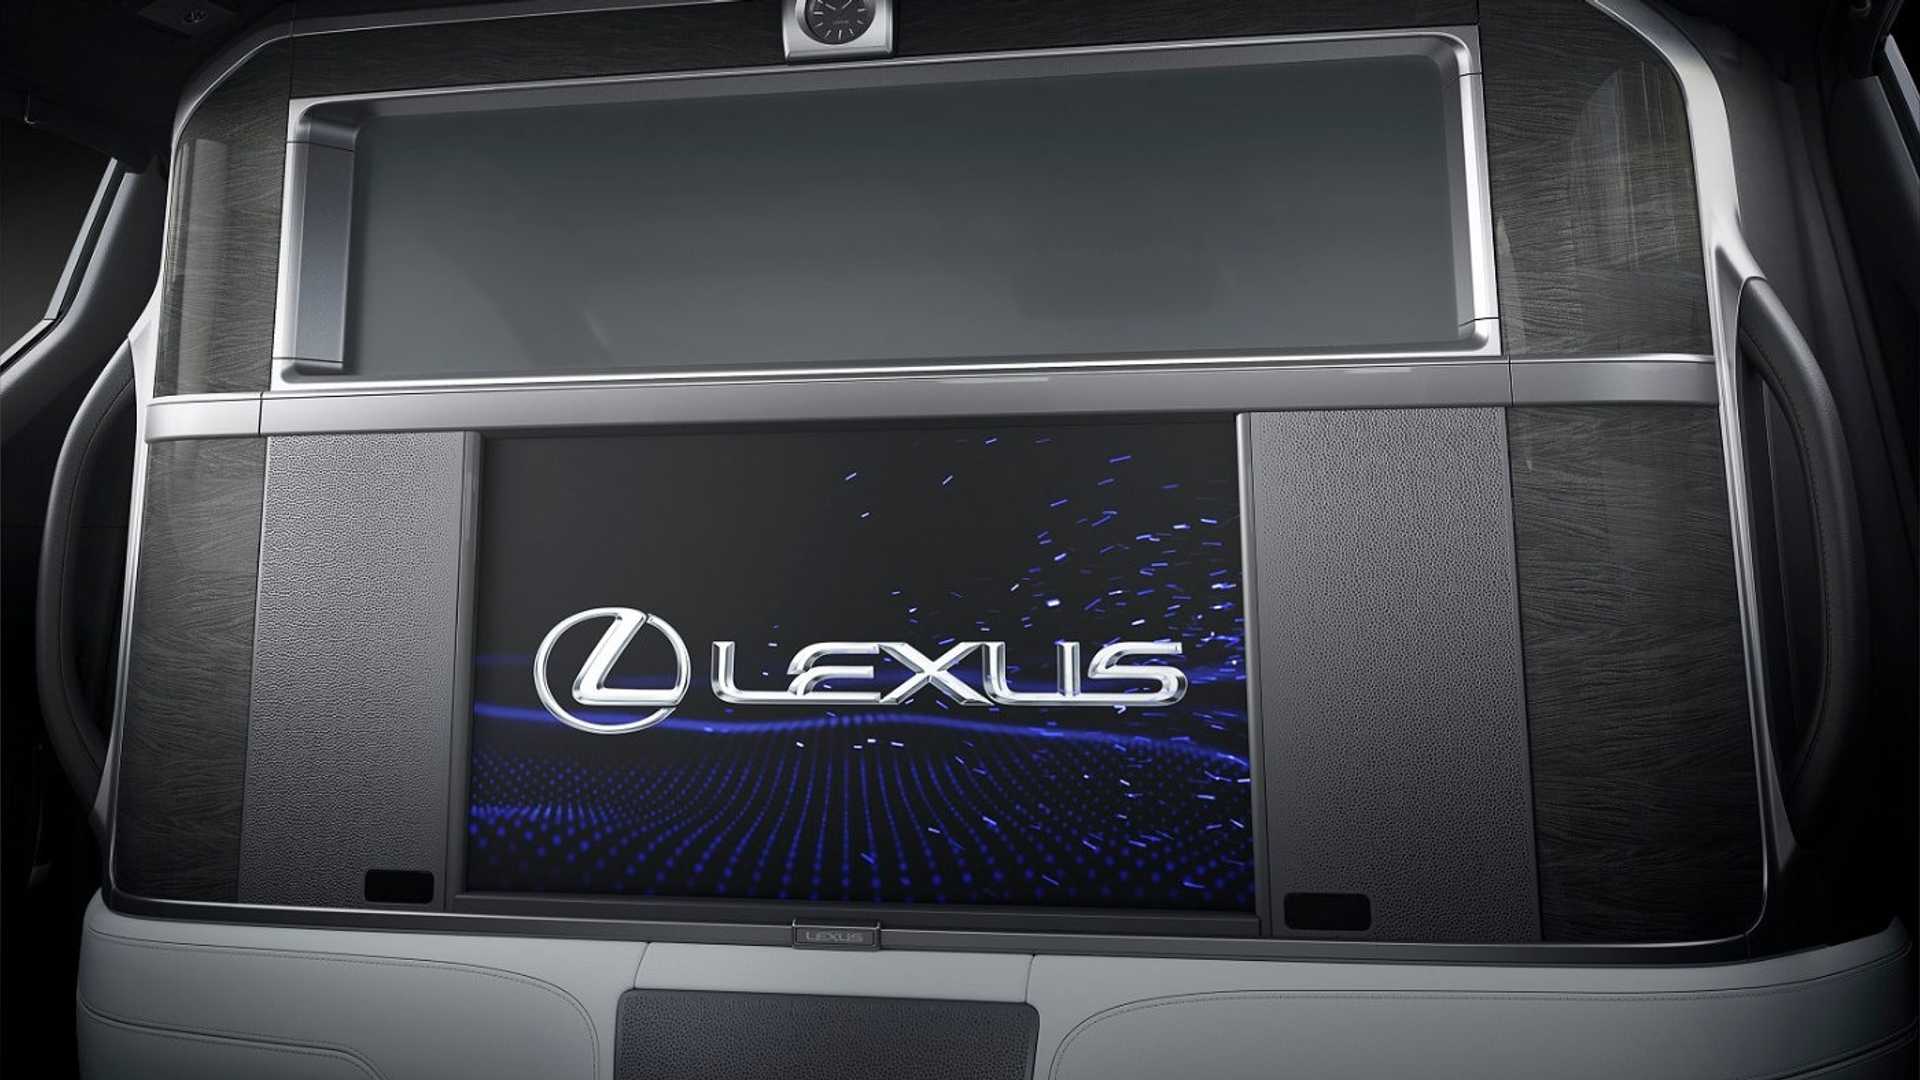 نمای داخل کابین مینی ون لوکس لکسوس ال ام / Lexus LM Minivan و پارتیشن حریم خصوصی